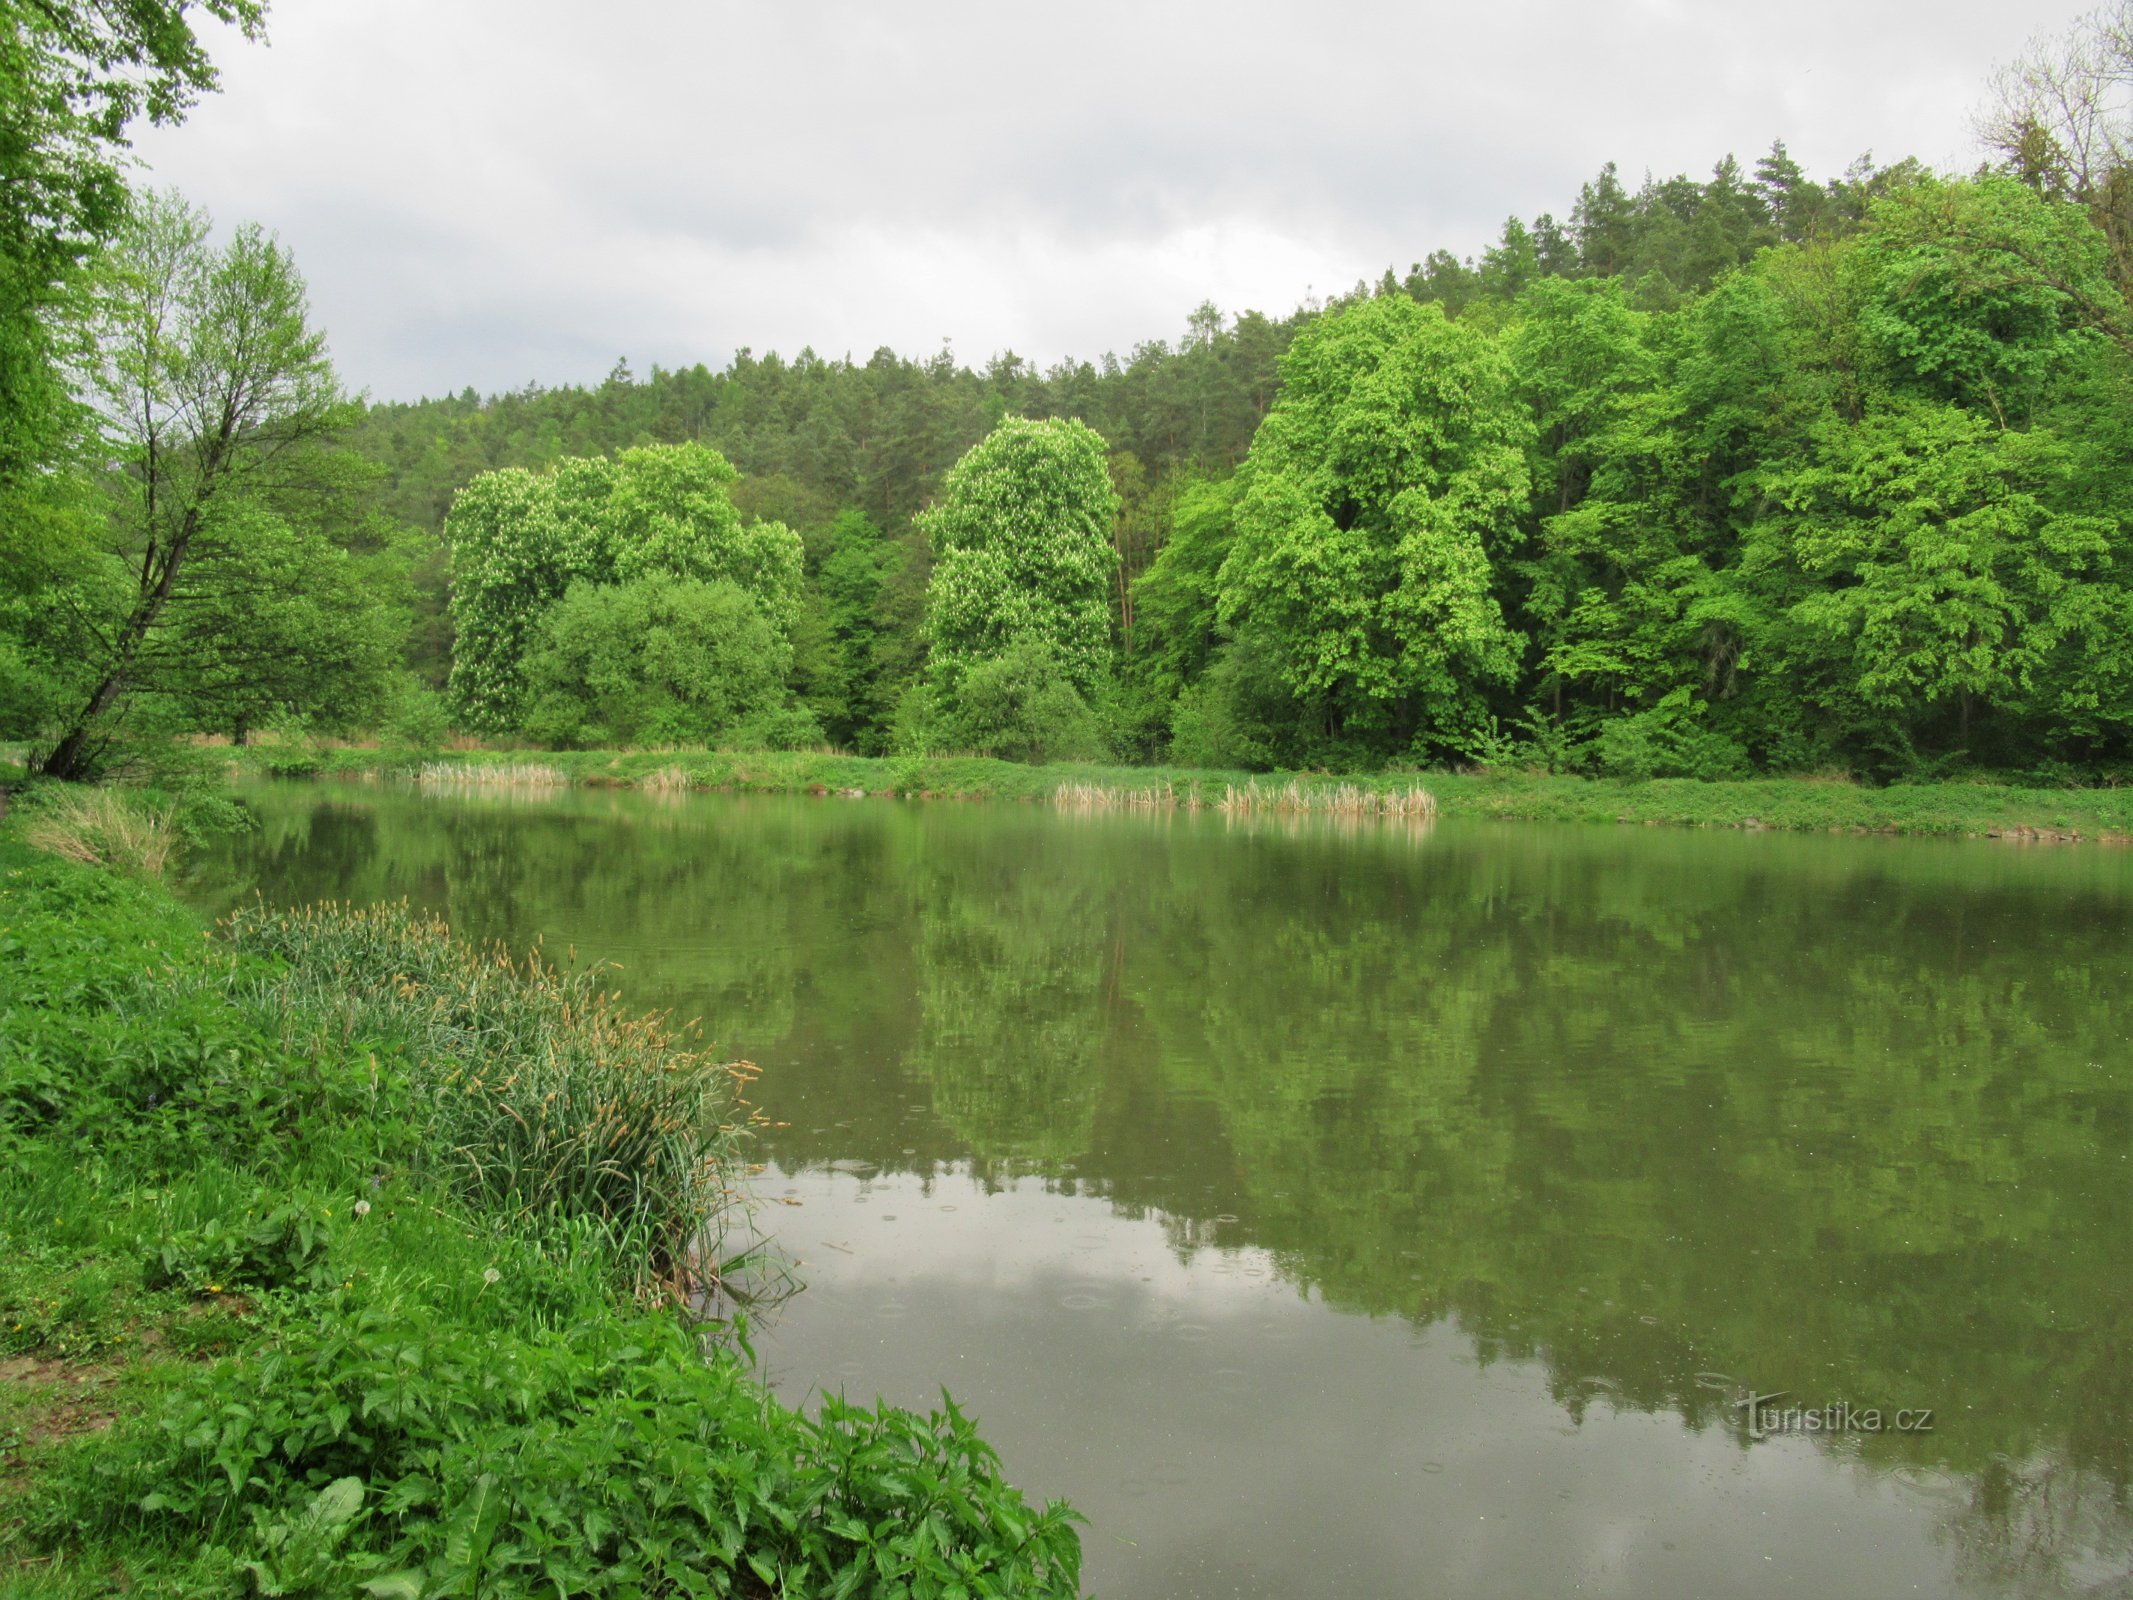 Ao trên Ponávka